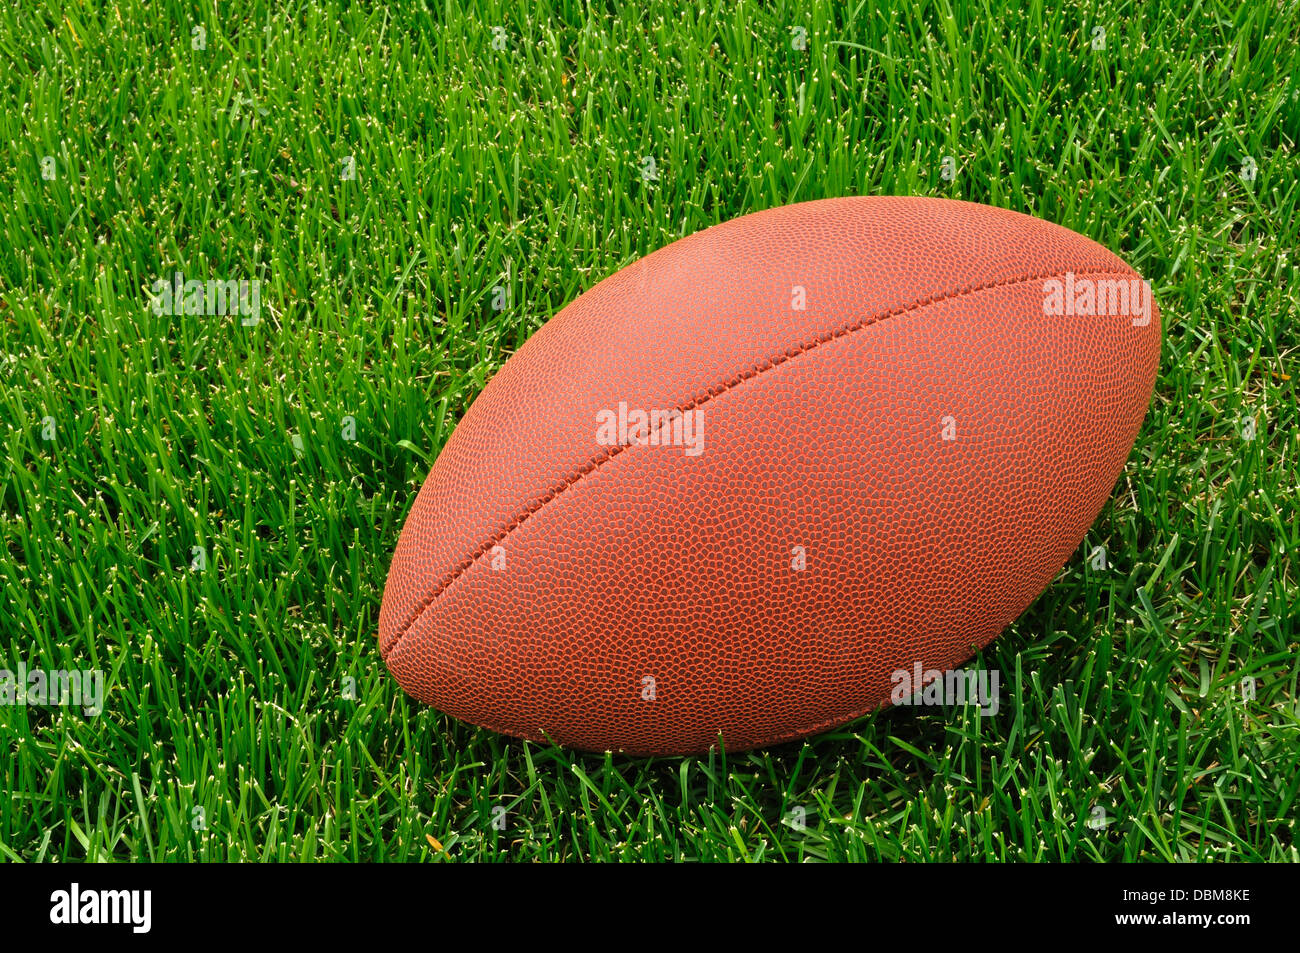 Le football américain sur un terrain de jeu d'herbe Banque D'Images